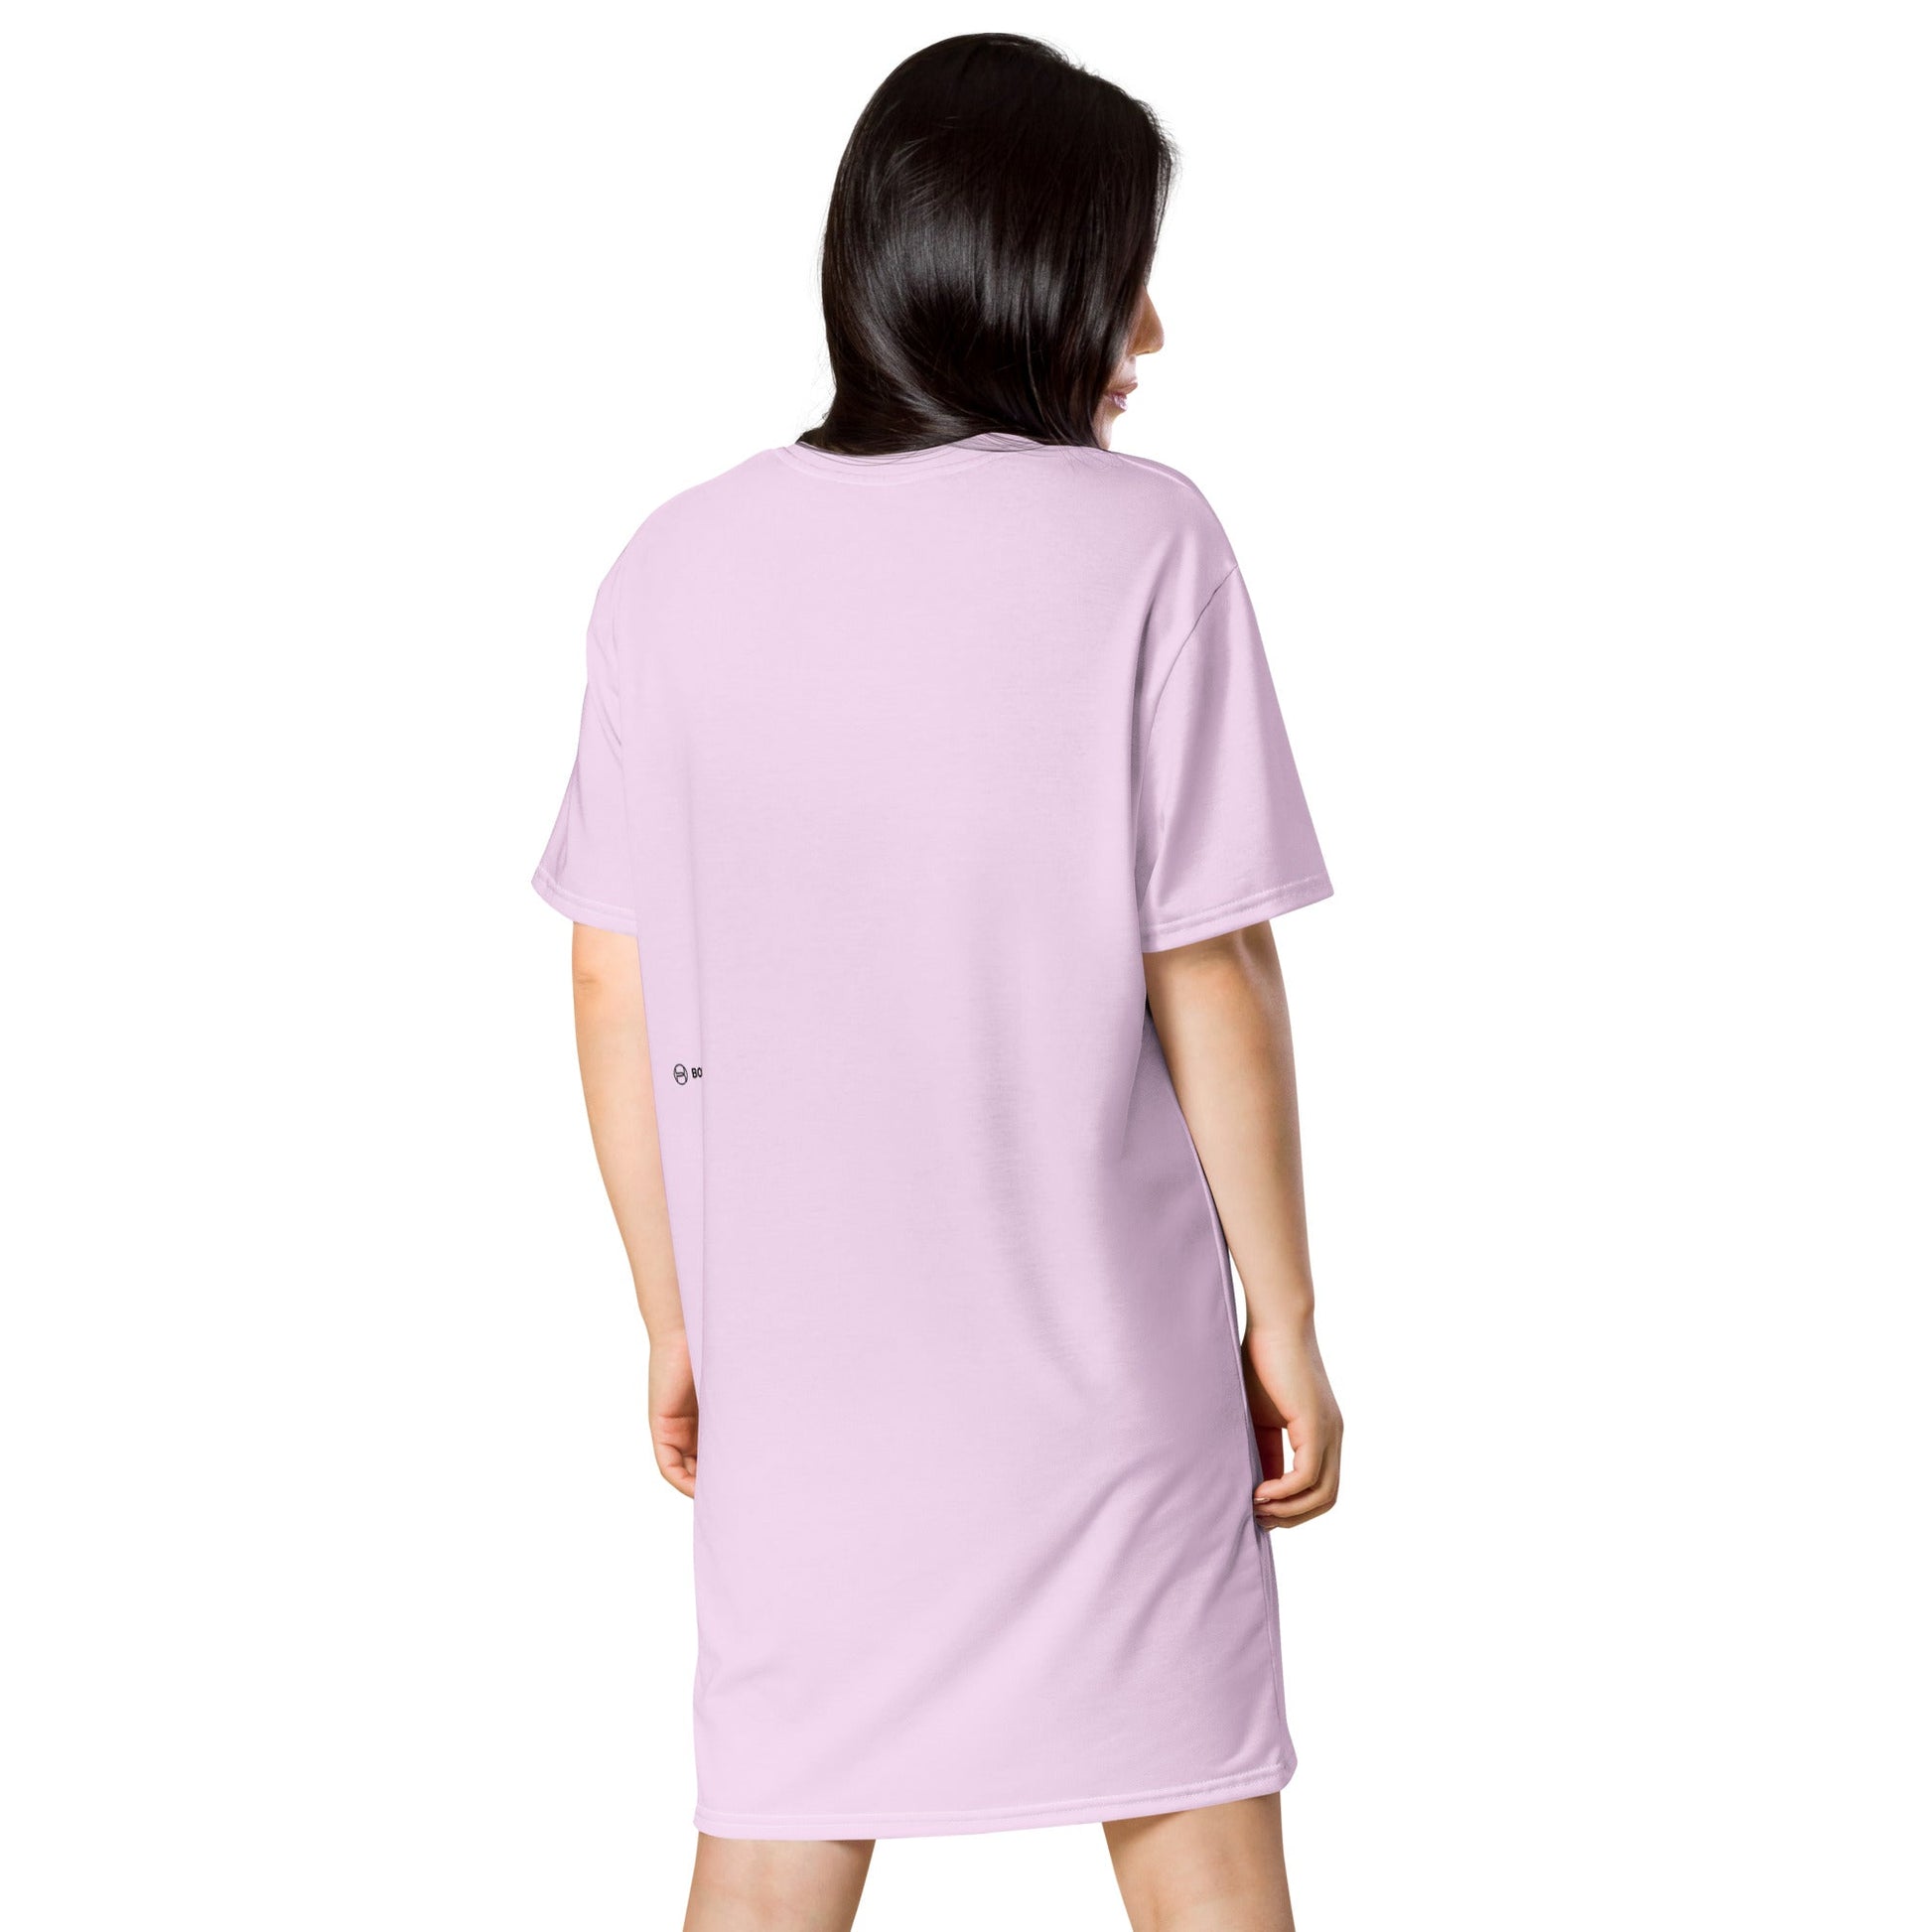 THE LITTLE SNAIL Women's T-Shirt Dress - Bonotee